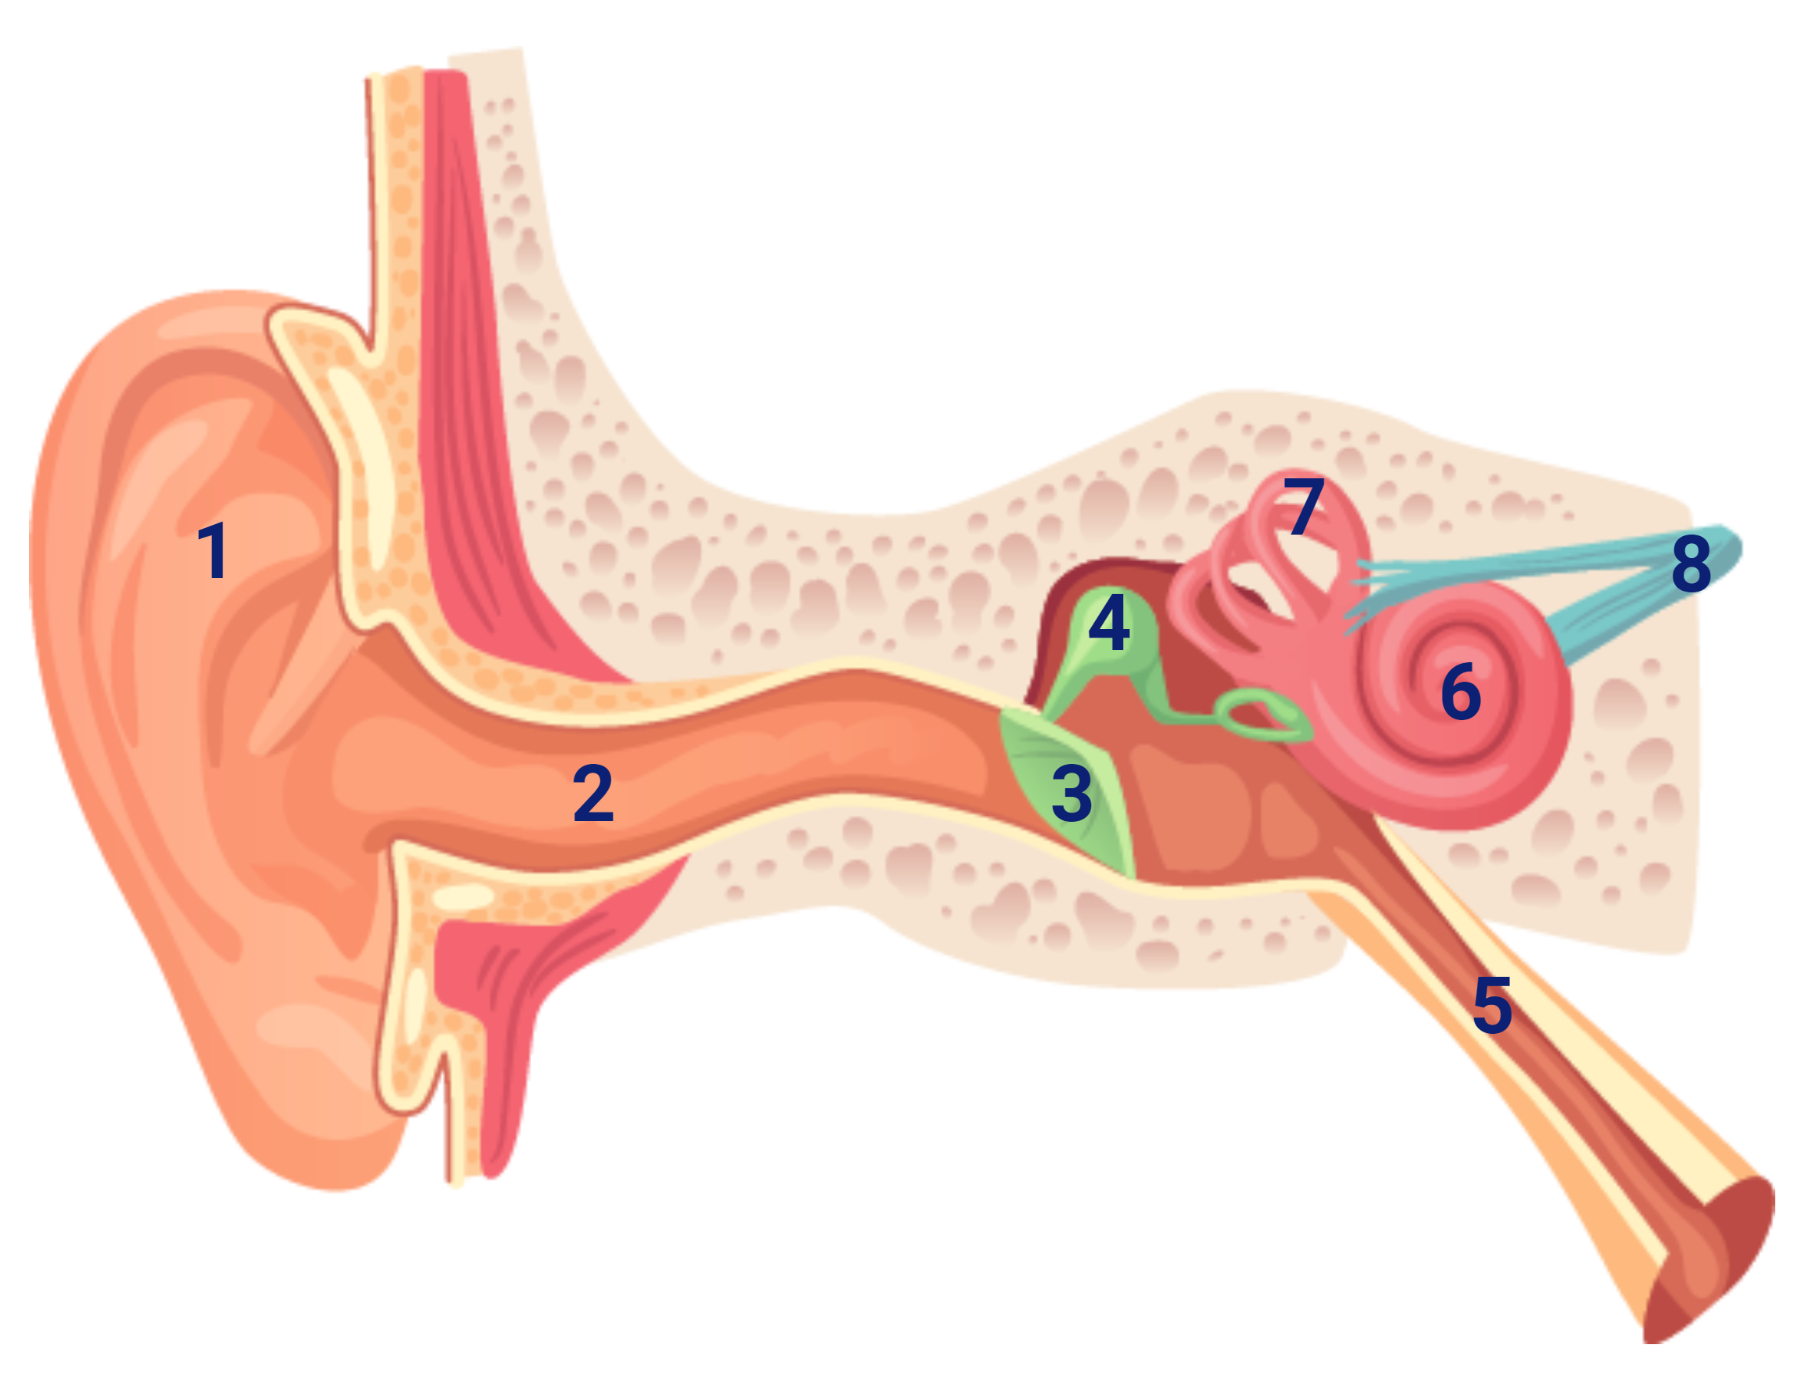 anatomie van het oor